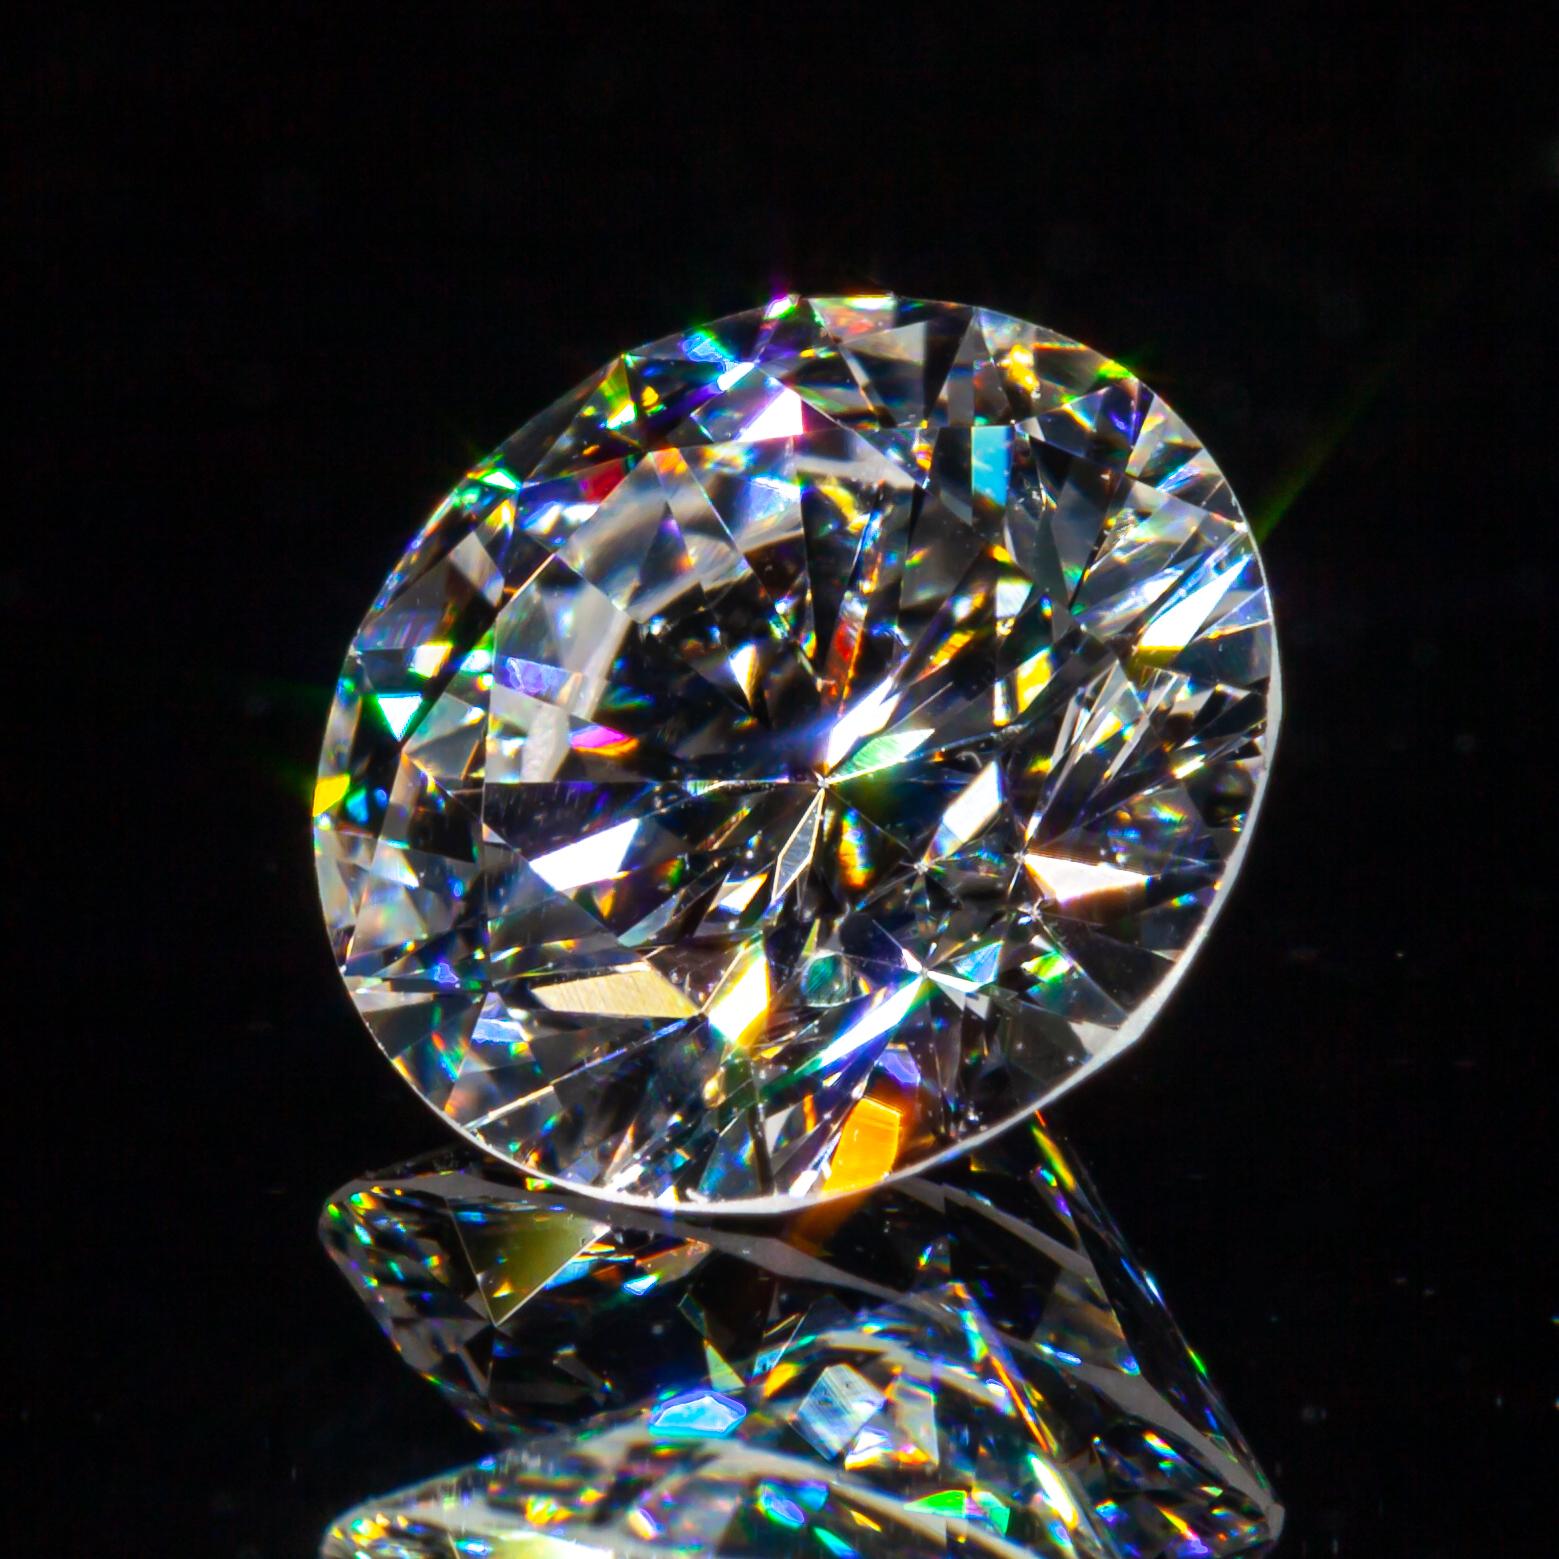 0.86 Carat Loose D / VS1 Round Brilliant Cut Diamond GIA Certified (en anglais seulement)

Informations générales sur le diamant
Taille du diamant : Brilliante ronde
Dimensions : 6.30  x  6.23  -  3.74 mm

Résultats de la classification des